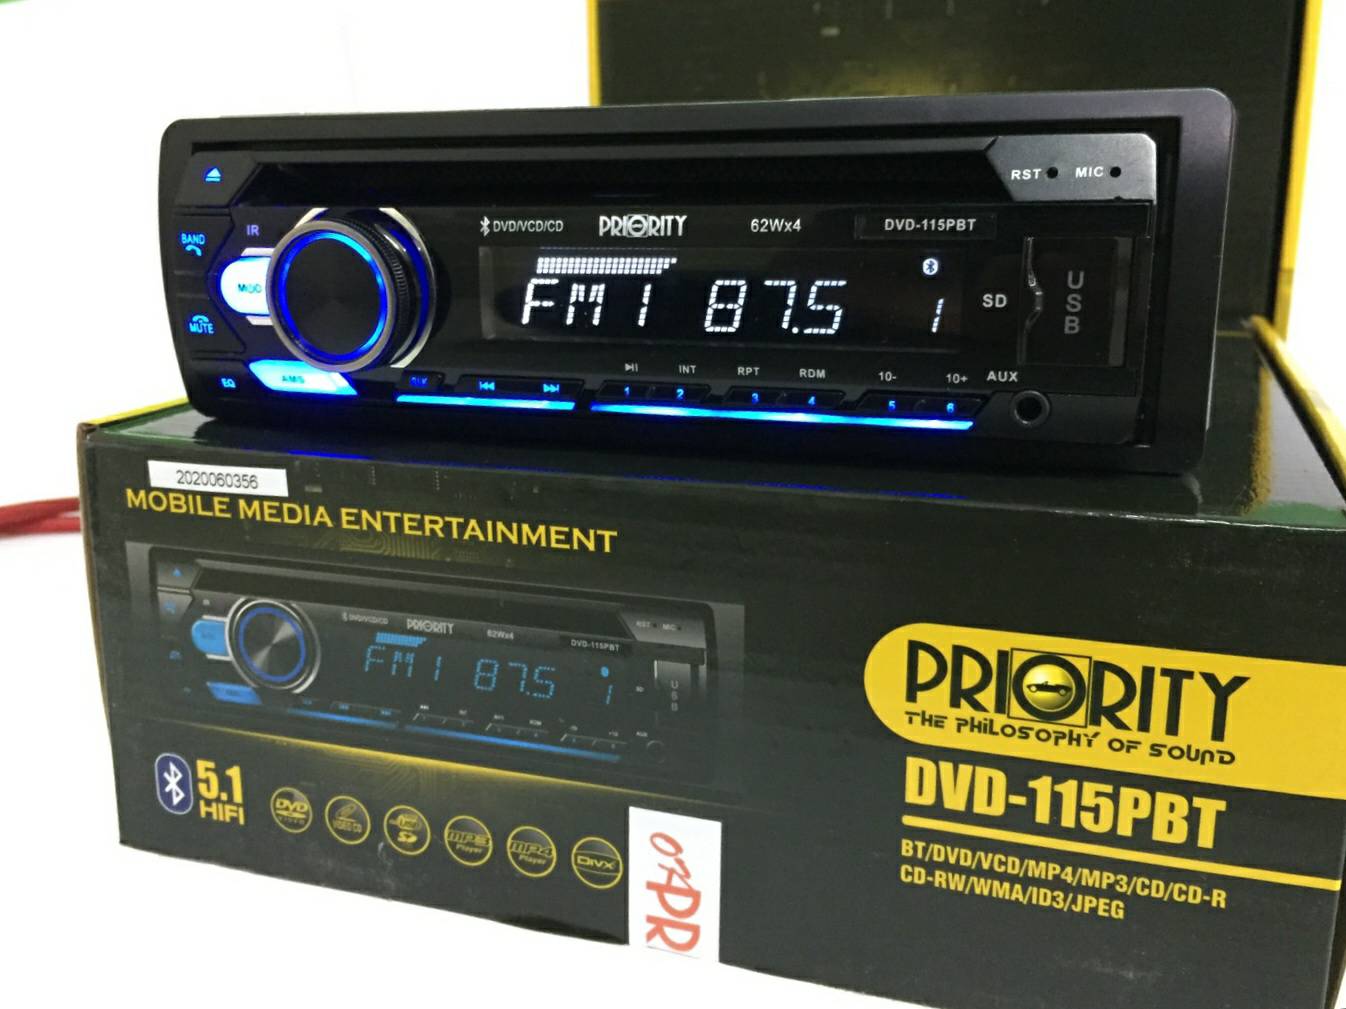 วิทยุติดรถยนต์ PRIORITY รุ่น DVD-115PBT เครื่องเล่นDVDรถยนต์ 1 DIN ฟังชั่น Bluetooth DVD/VCD/MP4/MP3/CD/CD-R/CD(กำลังขับ 62 W)